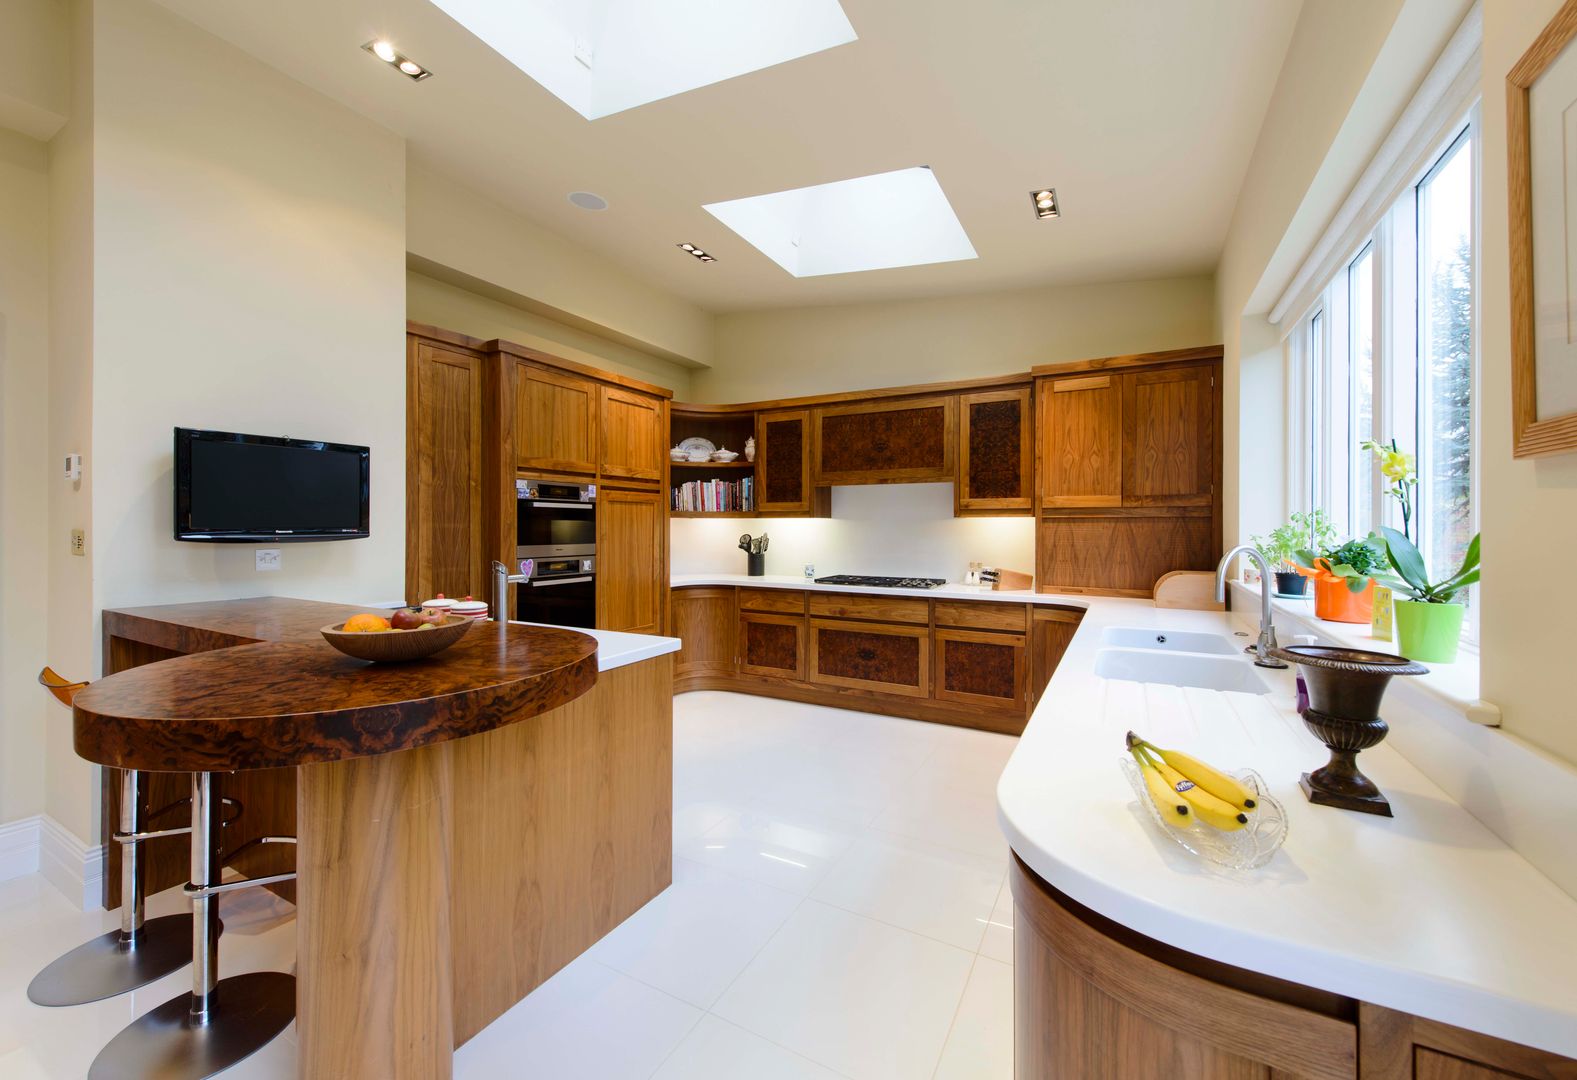 Walnut Curved Kitchen with White Corian Worktops George Bond Interior Design Modern kitchen Accessories & textiles